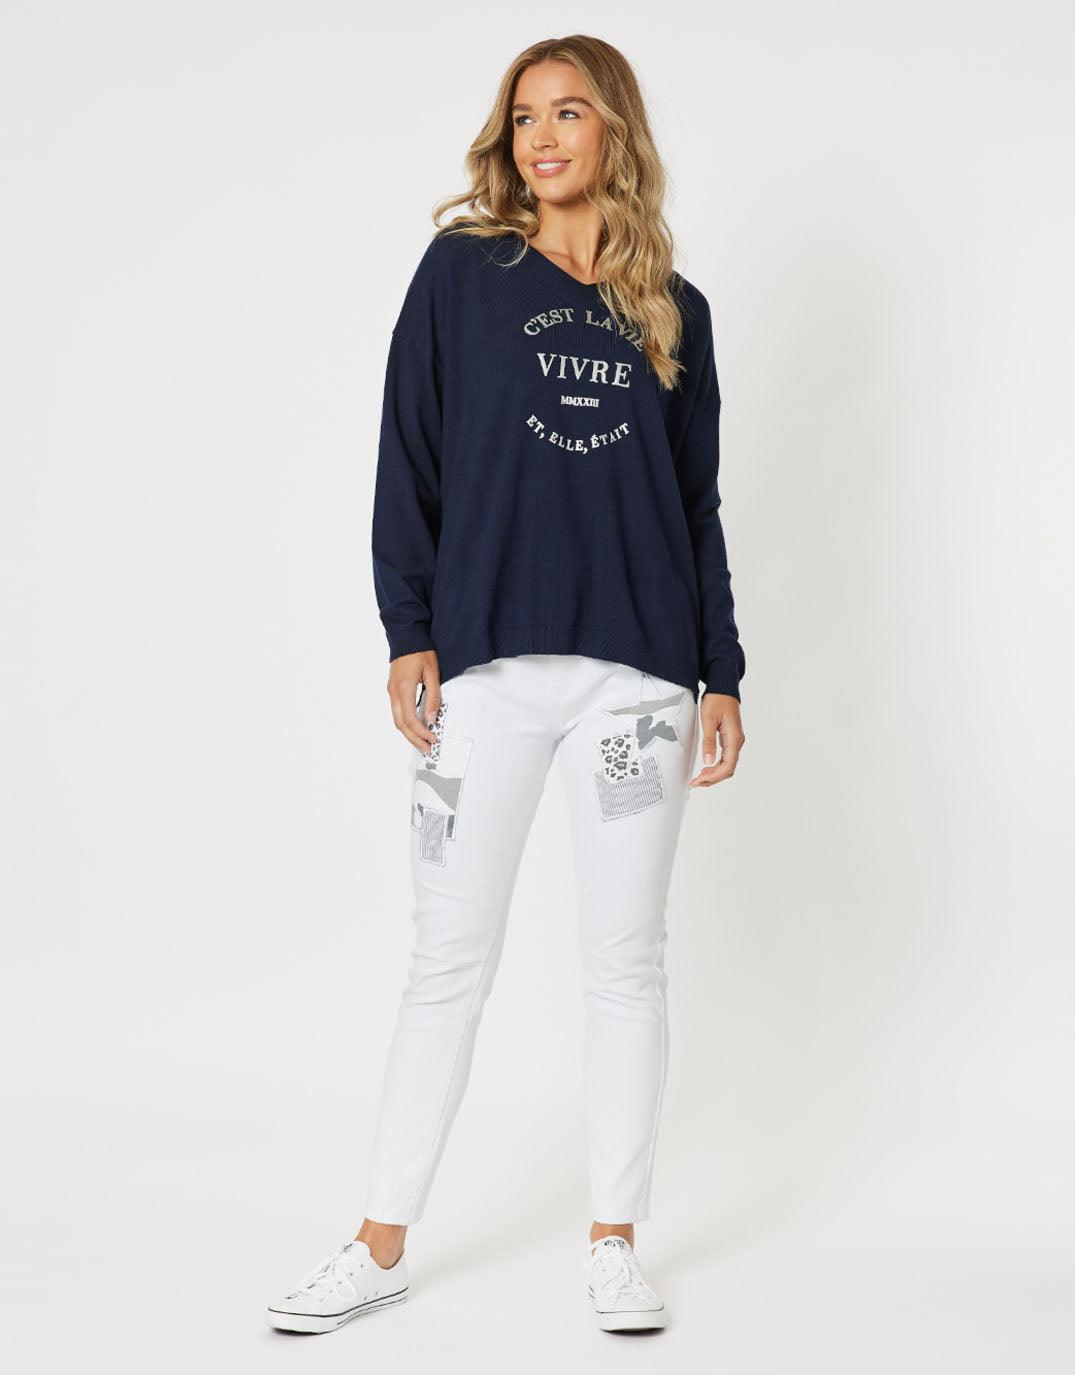 Threadz - Cest La Vie Knit - Navy - White & Co Living Knitwear